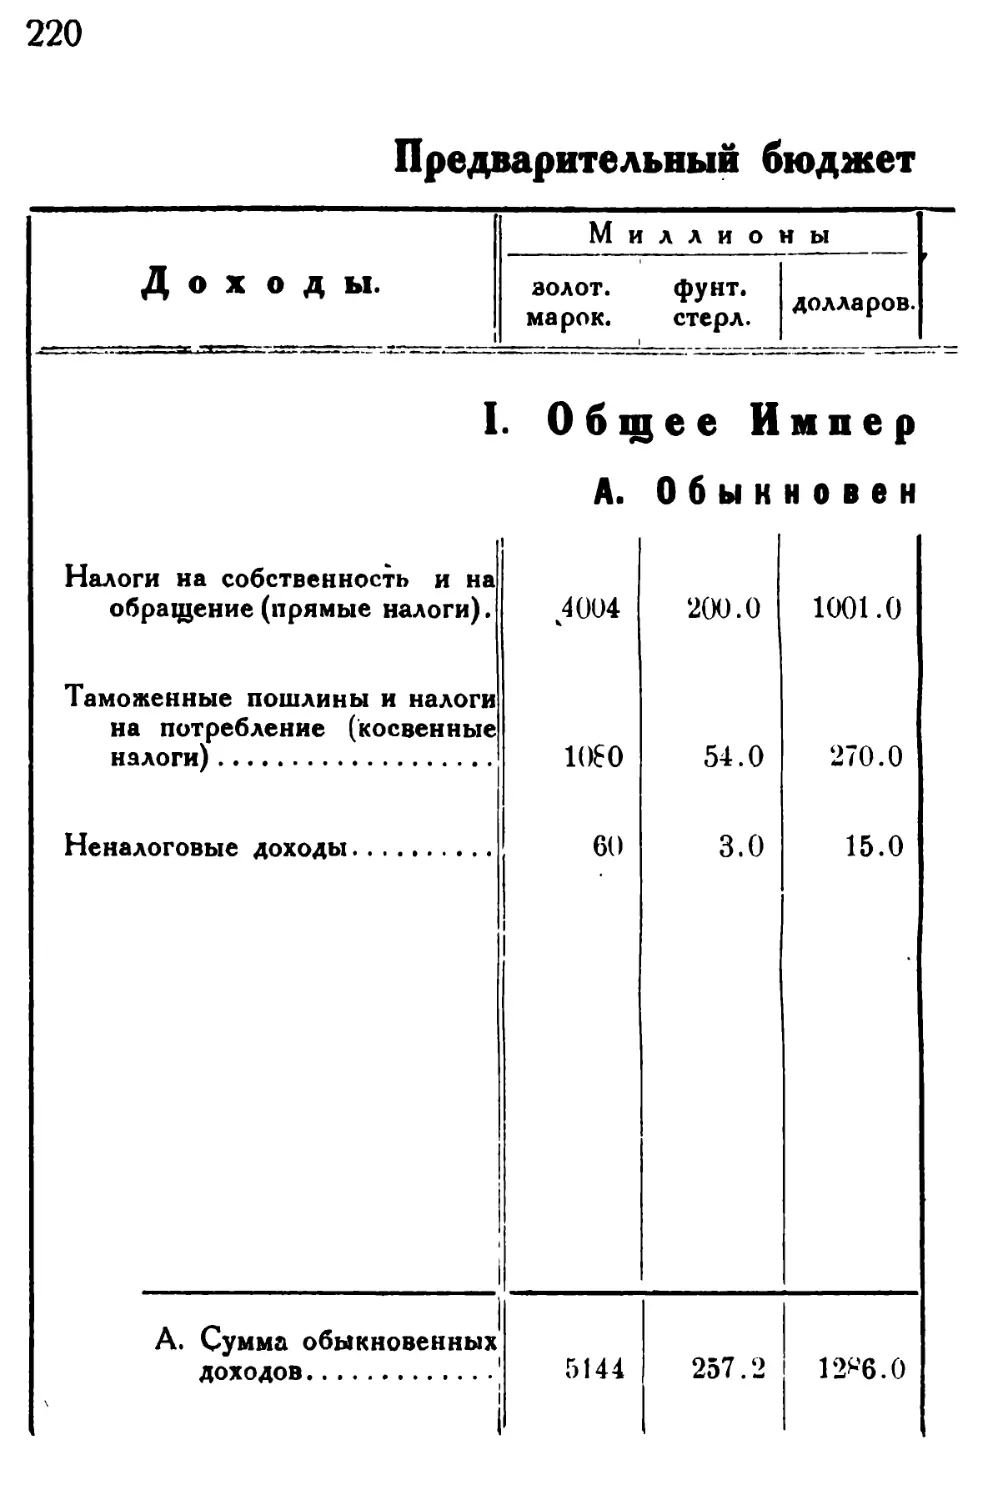 VIII. Предварительный бюджетный план на 1924 год